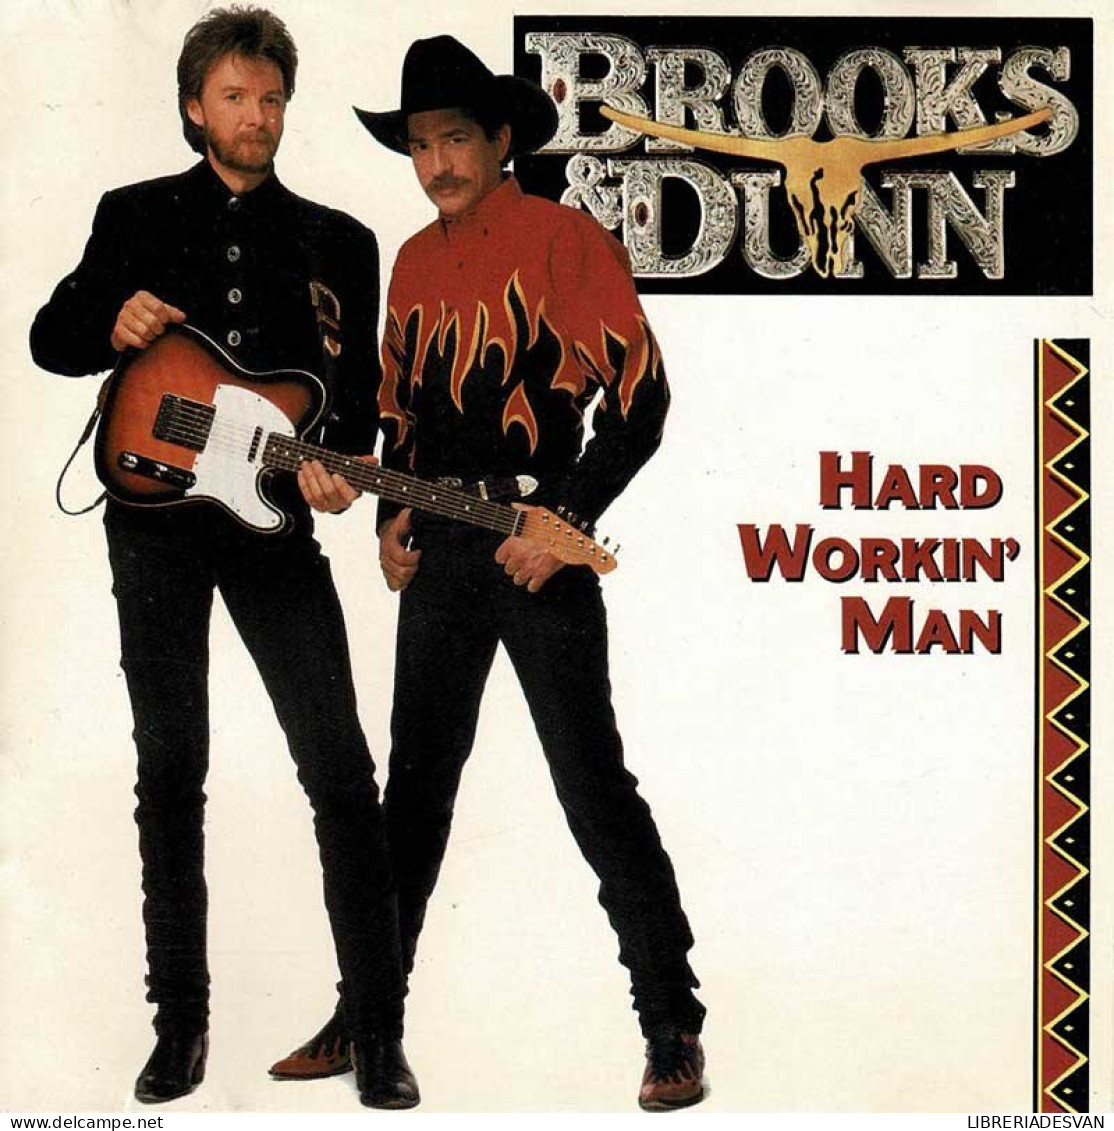 Brooks & Dunn - Hard Workin' Man. CD - Country & Folk